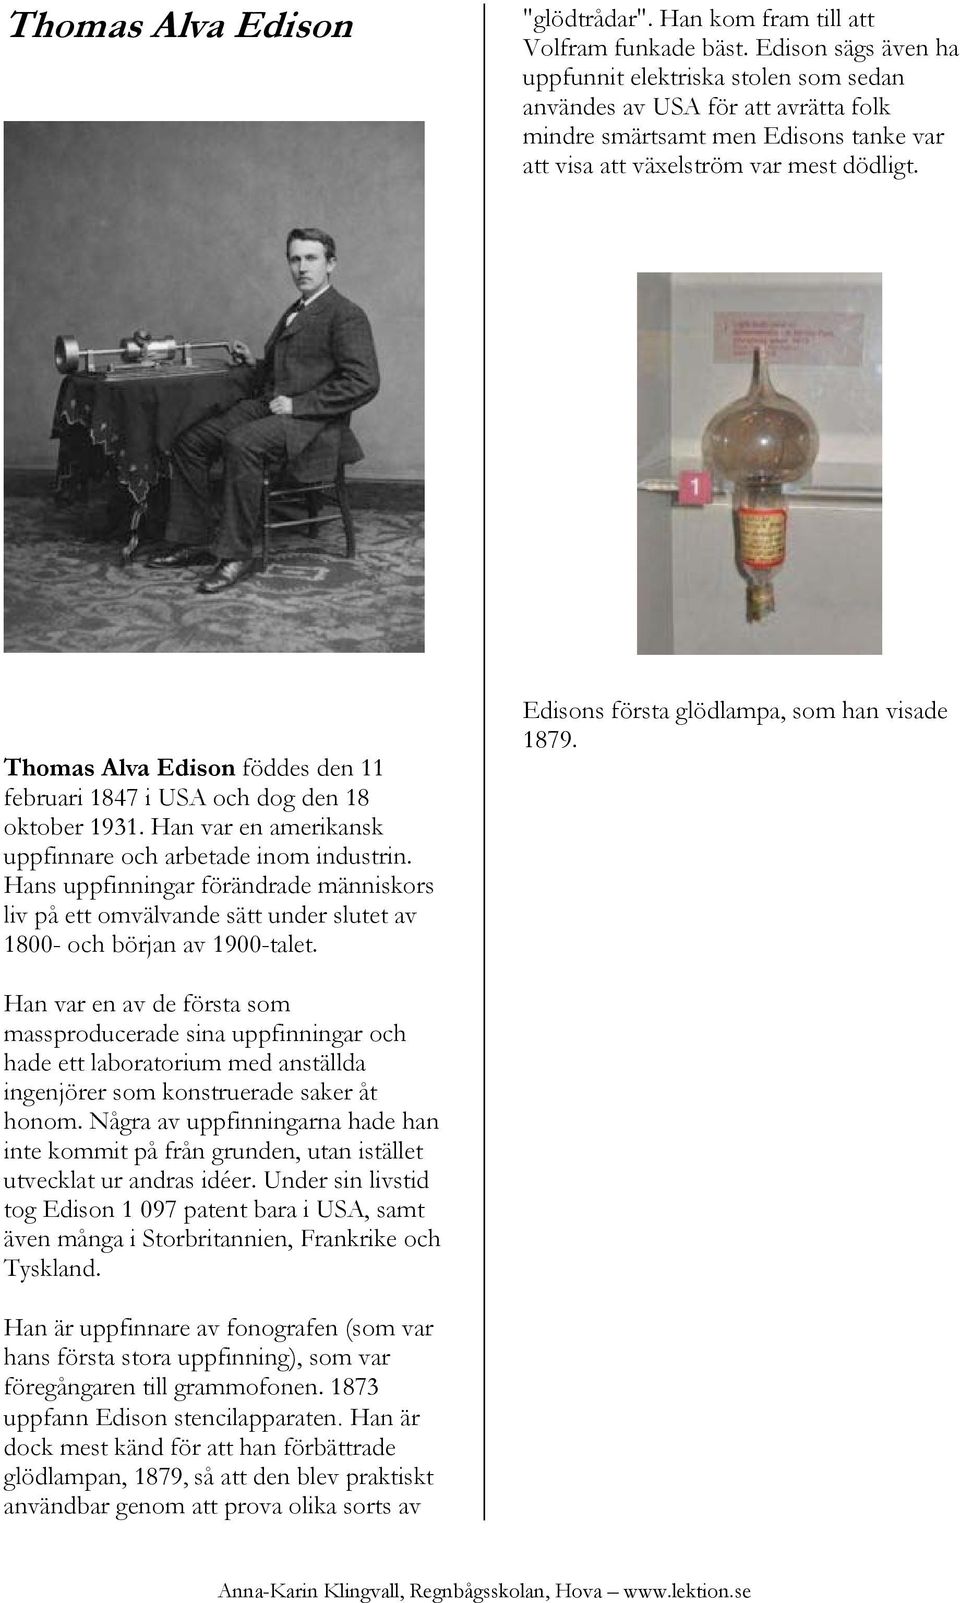 Thomas Alva Edison föddes den 11 februari 1847 i USA och dog den 18 oktober 1931. Han var en amerikansk uppfinnare och arbetade inom industrin.